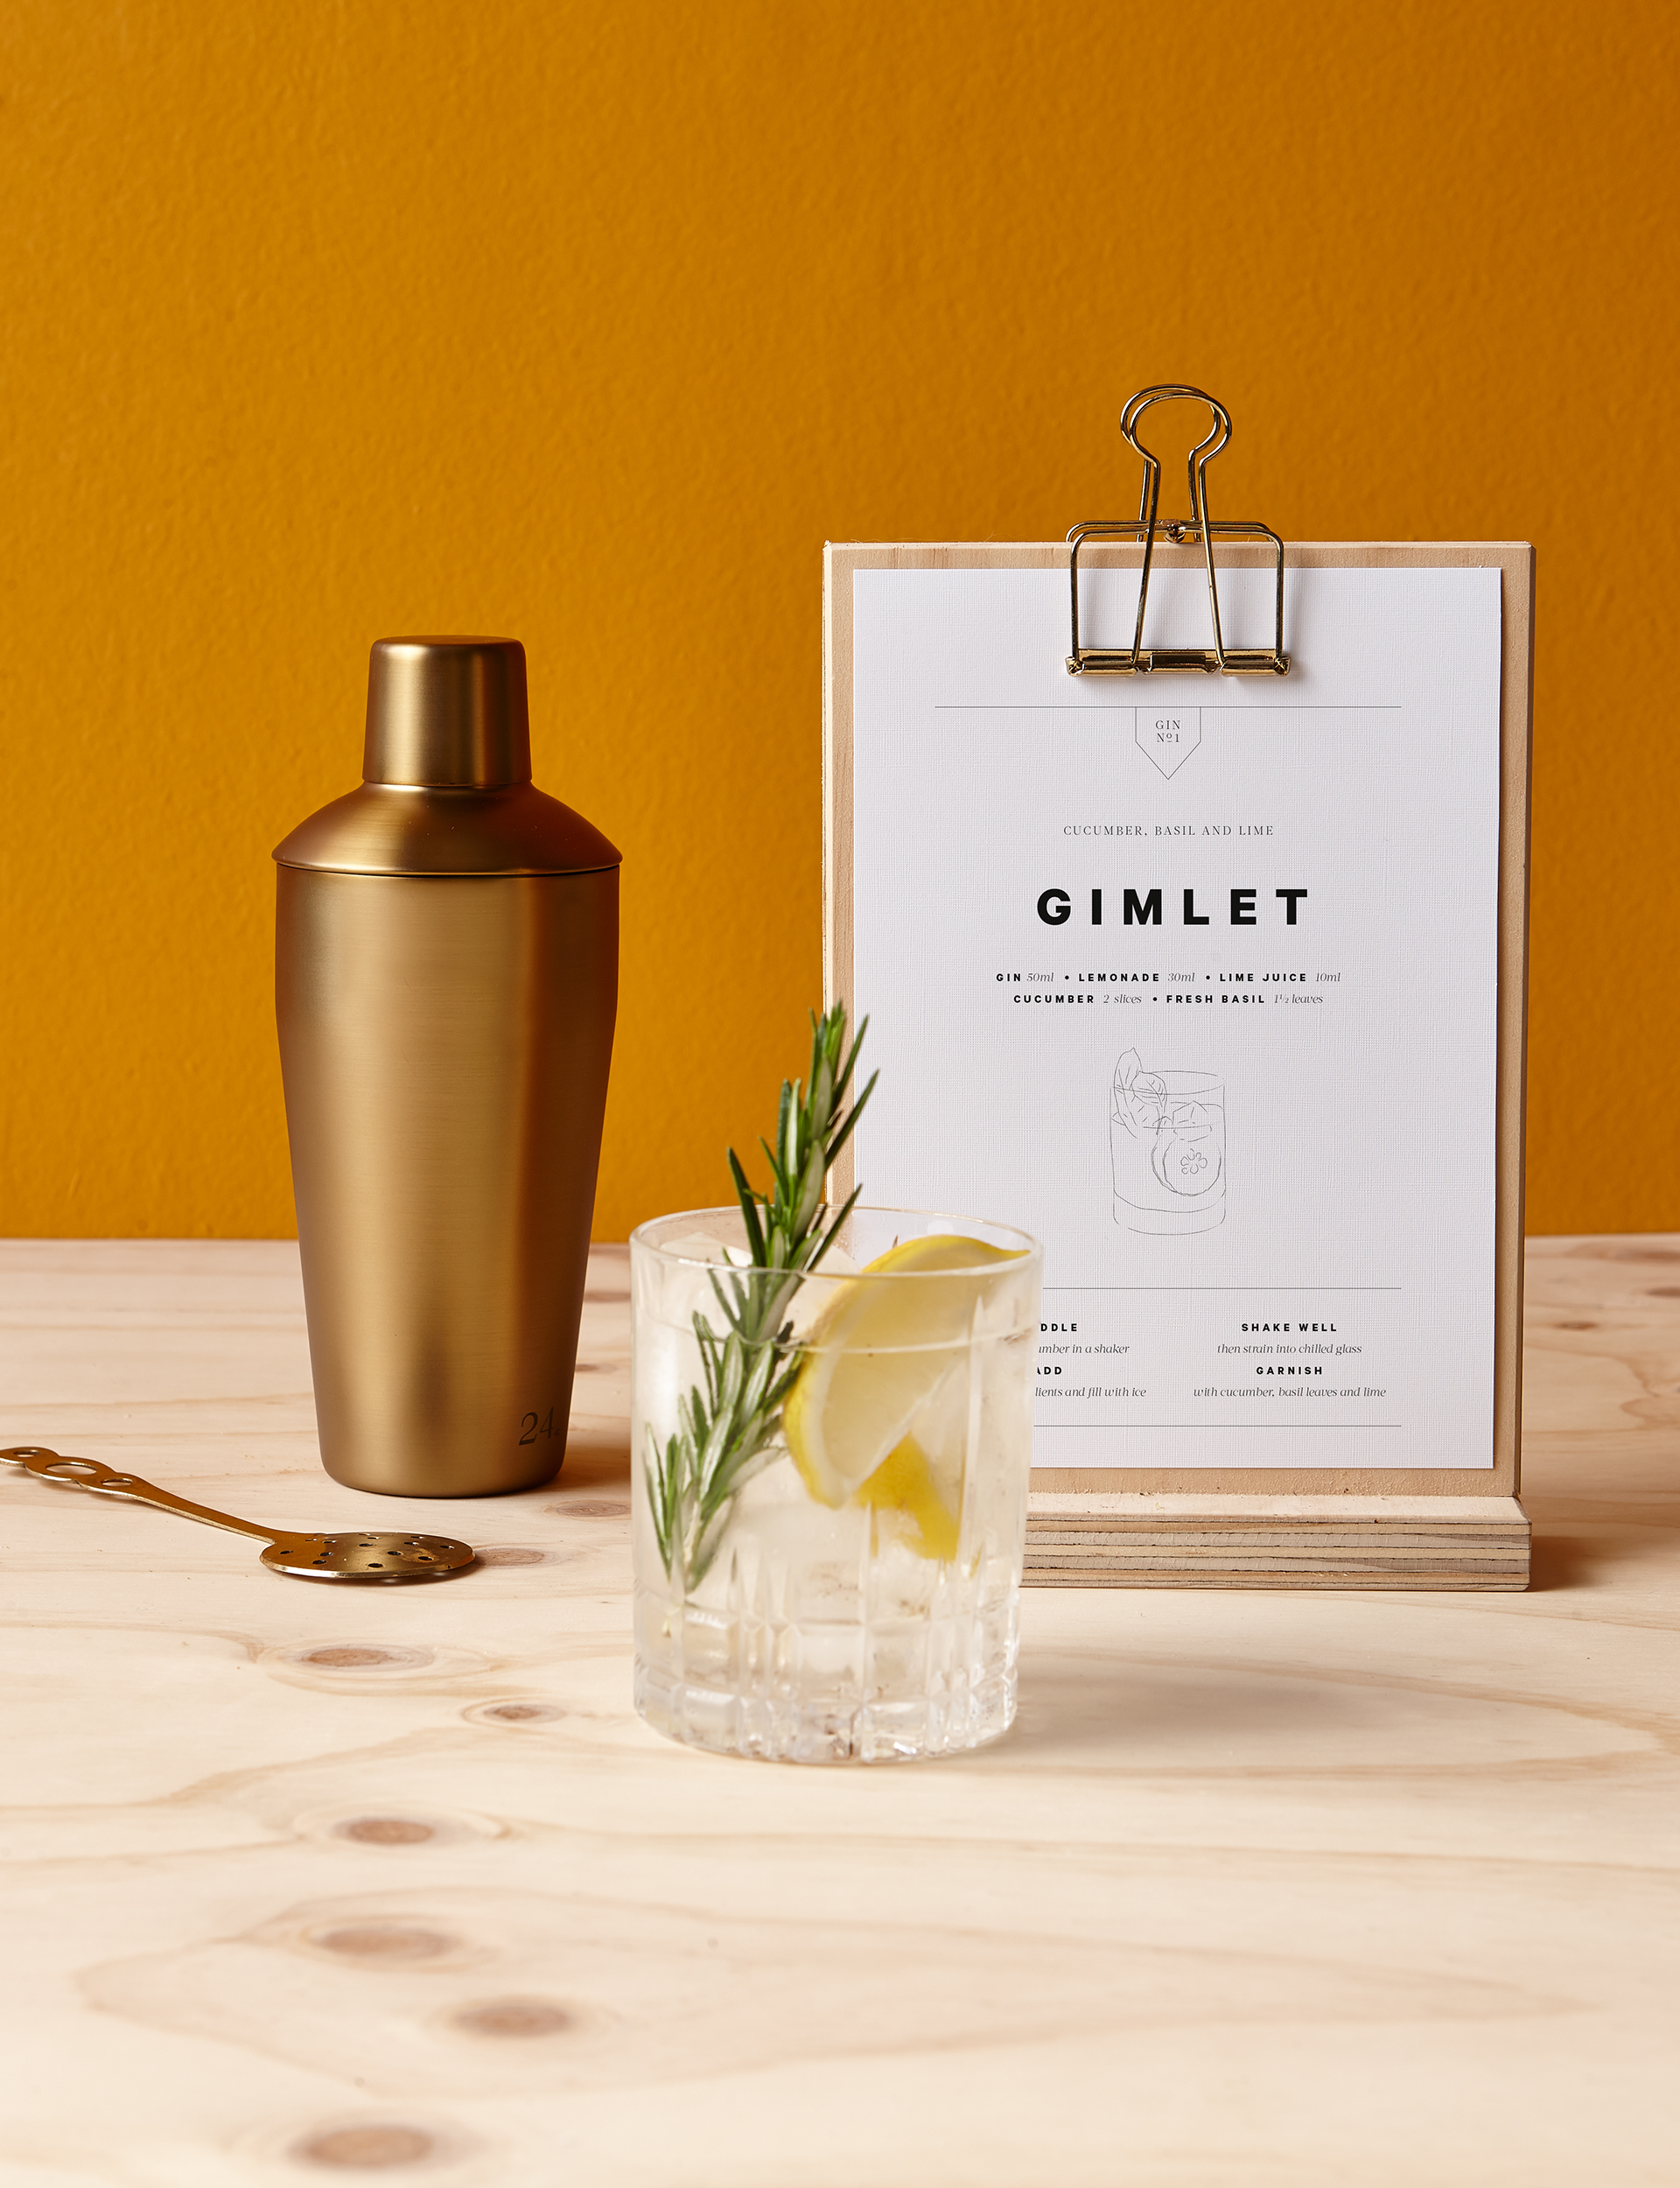 DIY gift ideas, DIY cocktail kit 